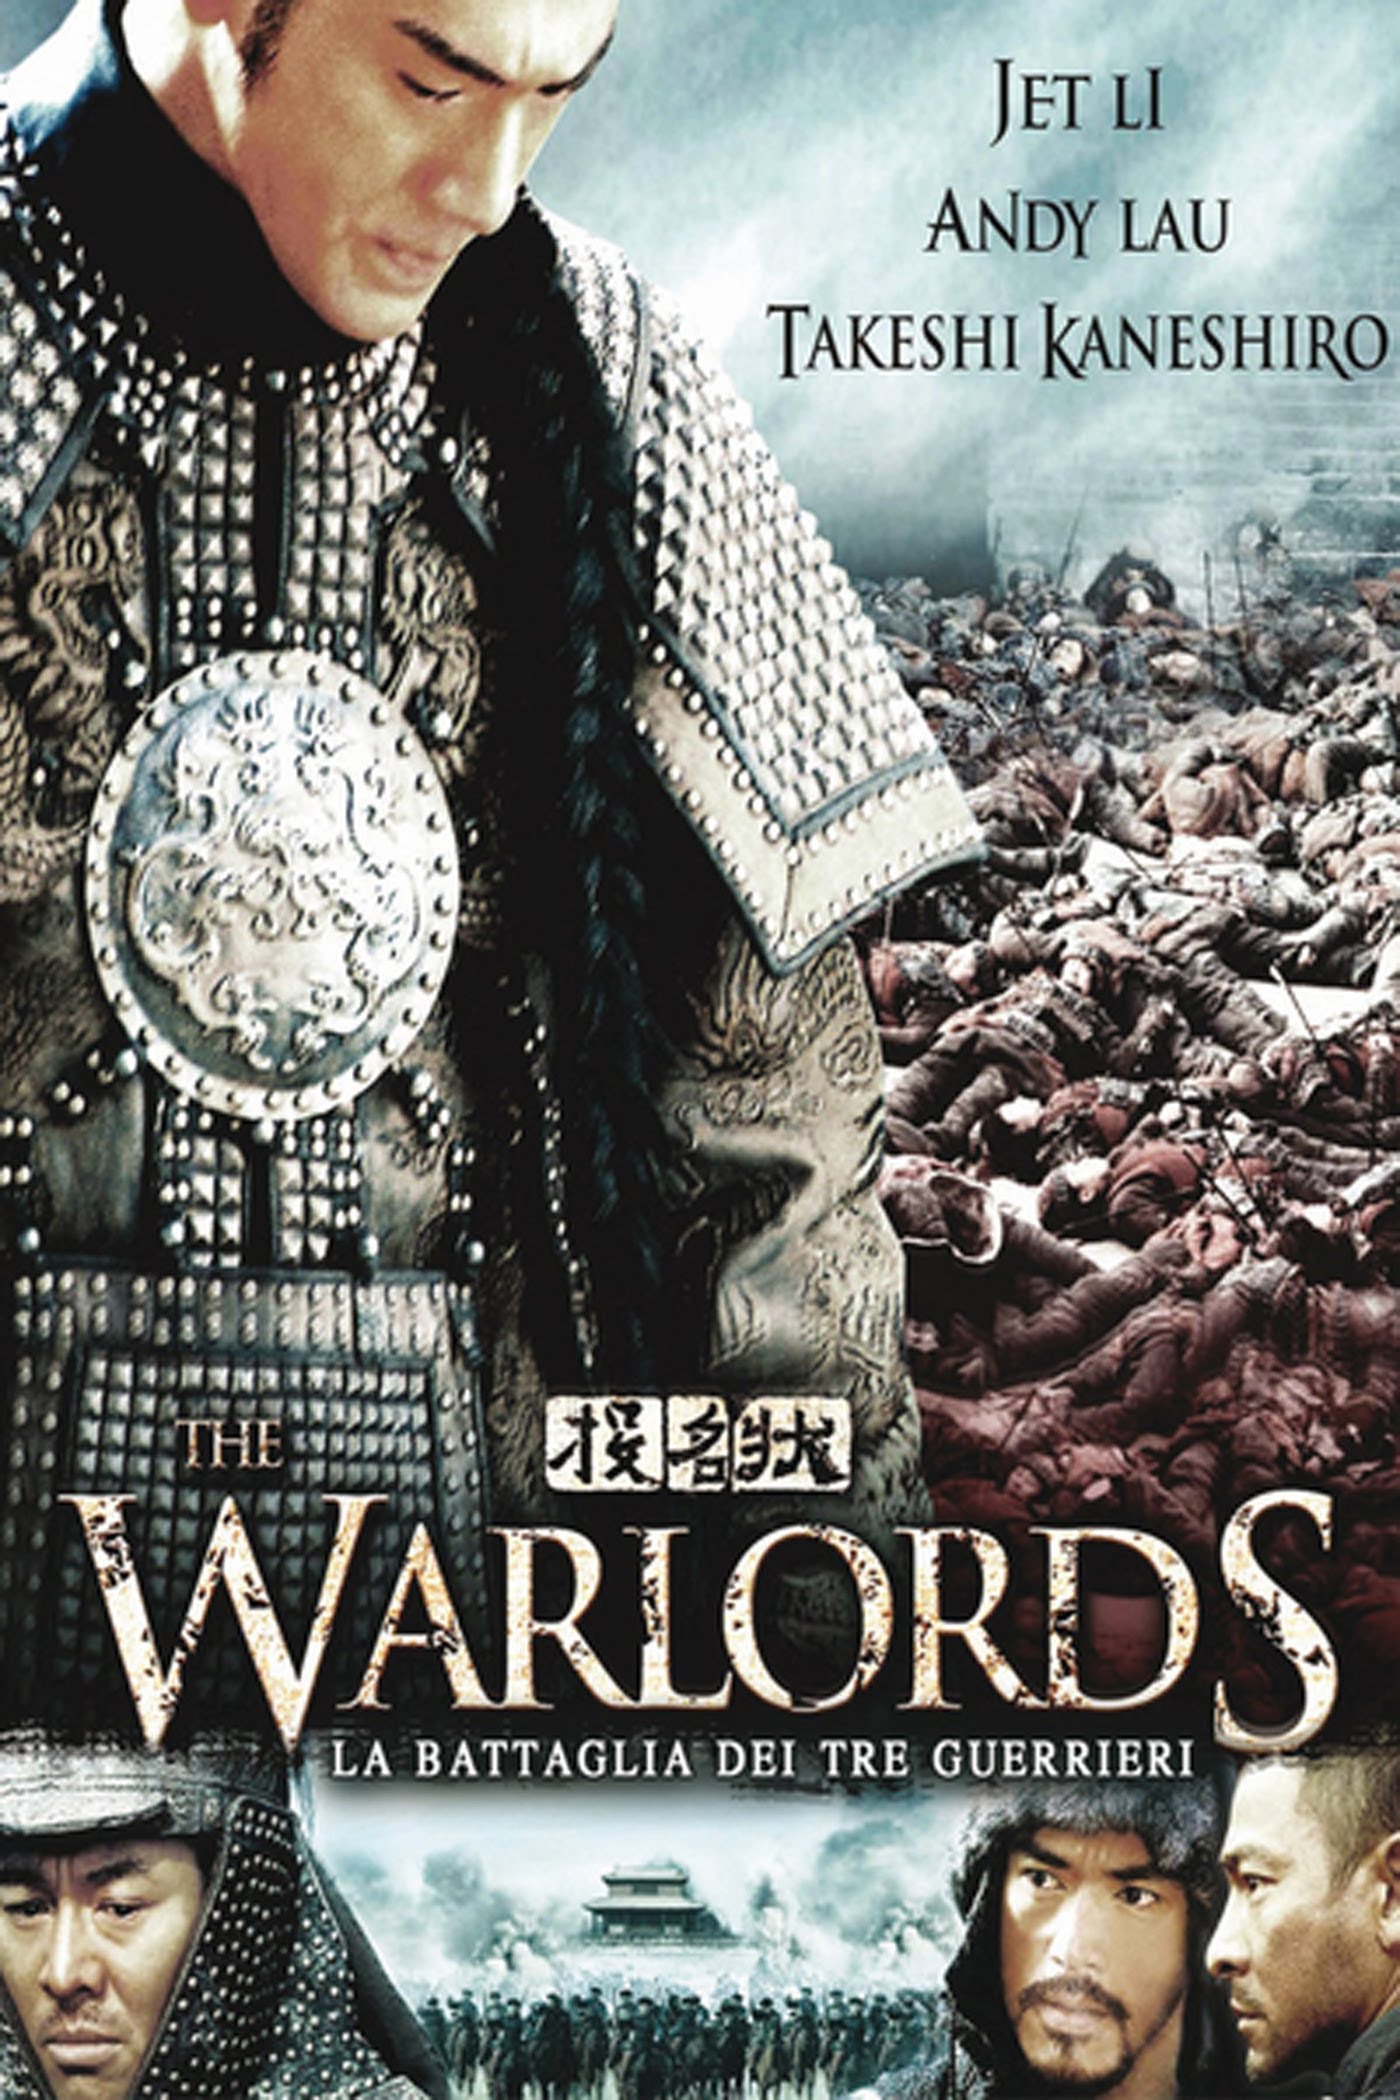 The warlords – La battaglia dei tre guerrieri (2007)